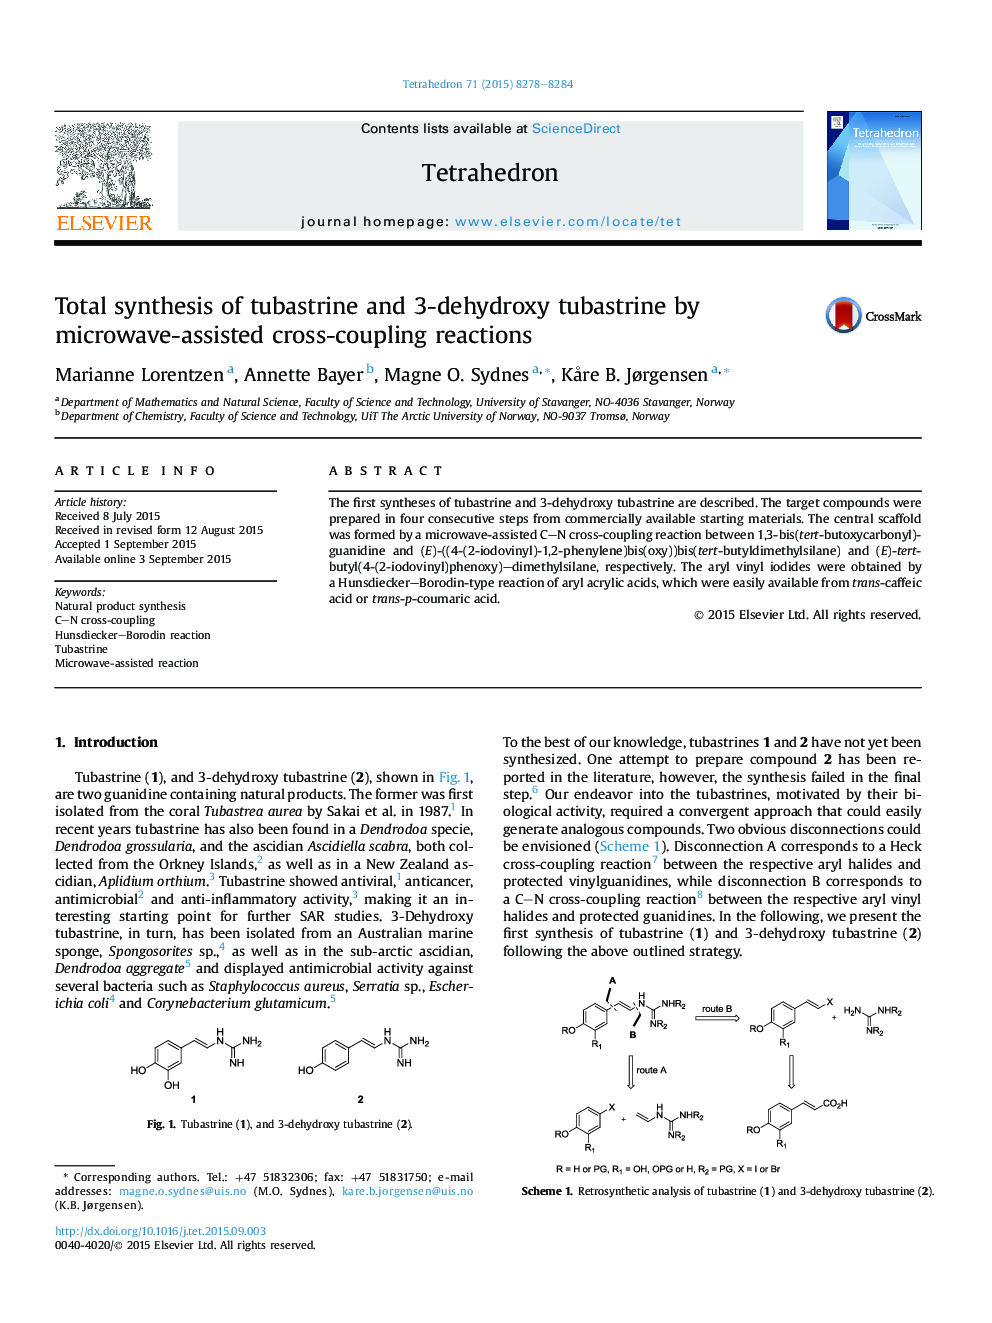 سنتز کامل لوله های توبرستین و 3-دی هیدروکسی توباسترین با واکنش های متقابل کروی توسط مایکروویو 